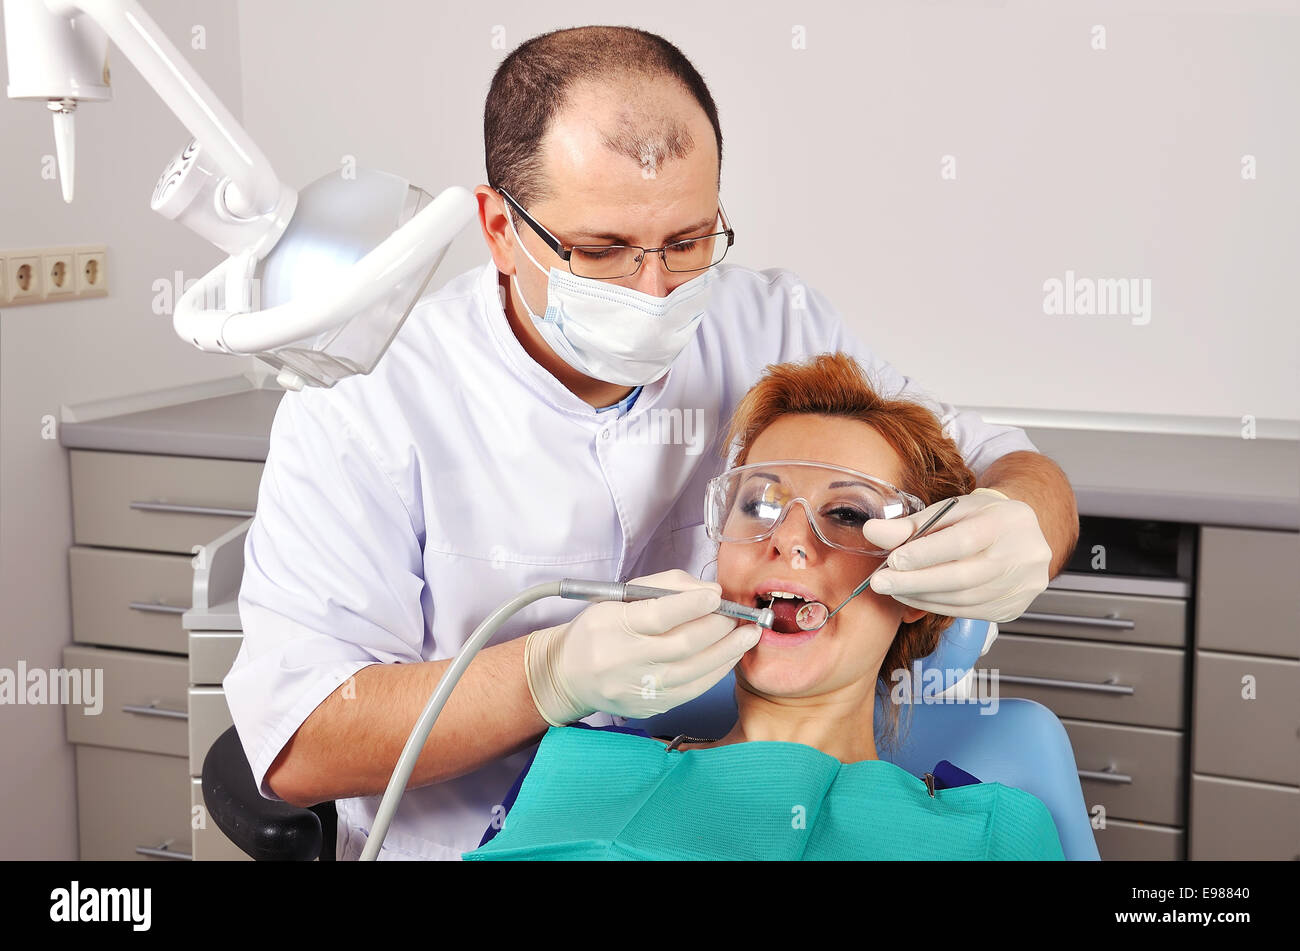 Image de femme dentaire checkup Banque D'Images